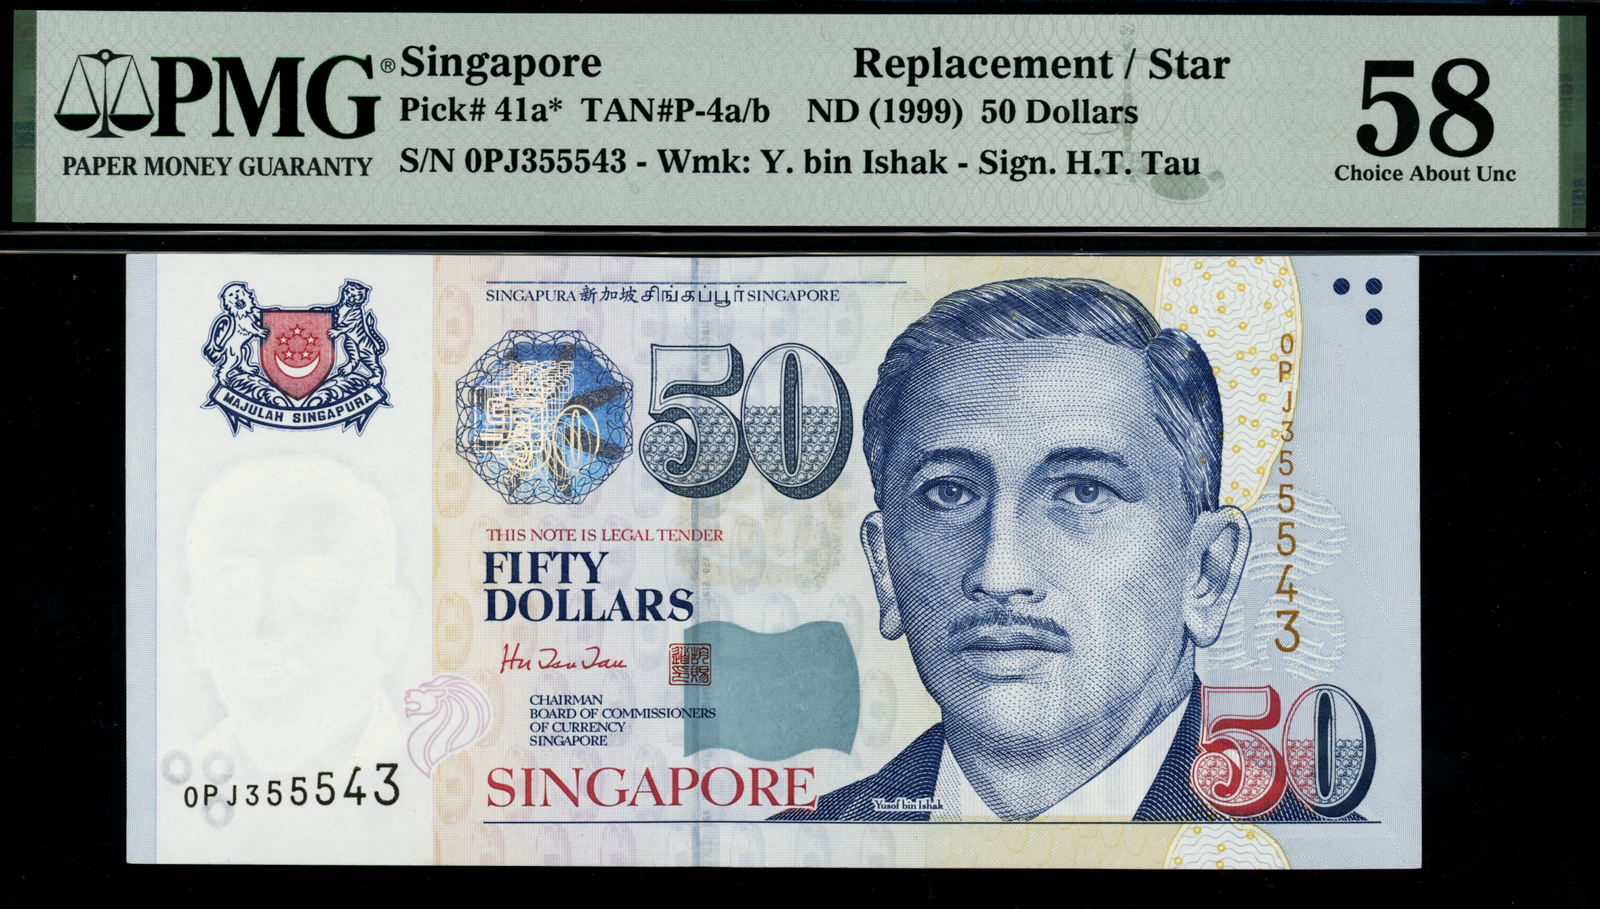 Singapore Portrait 1999 $50 HTT Replacement Note 0PJ355543 PMG 58 